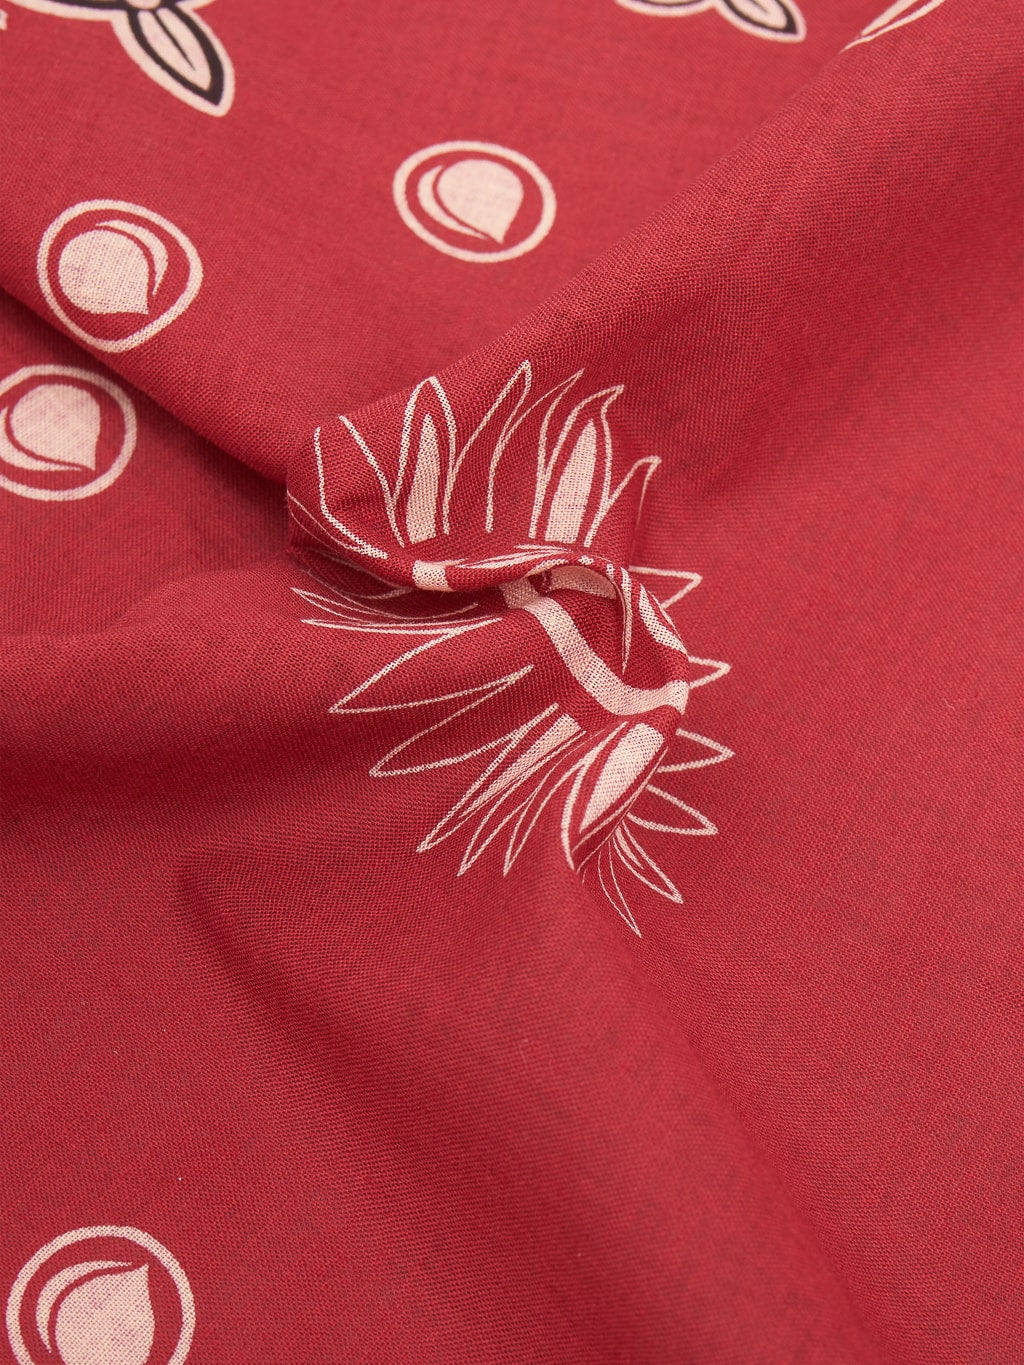 Momotaro AS 60 Original Bandana red high quality cotton fabric